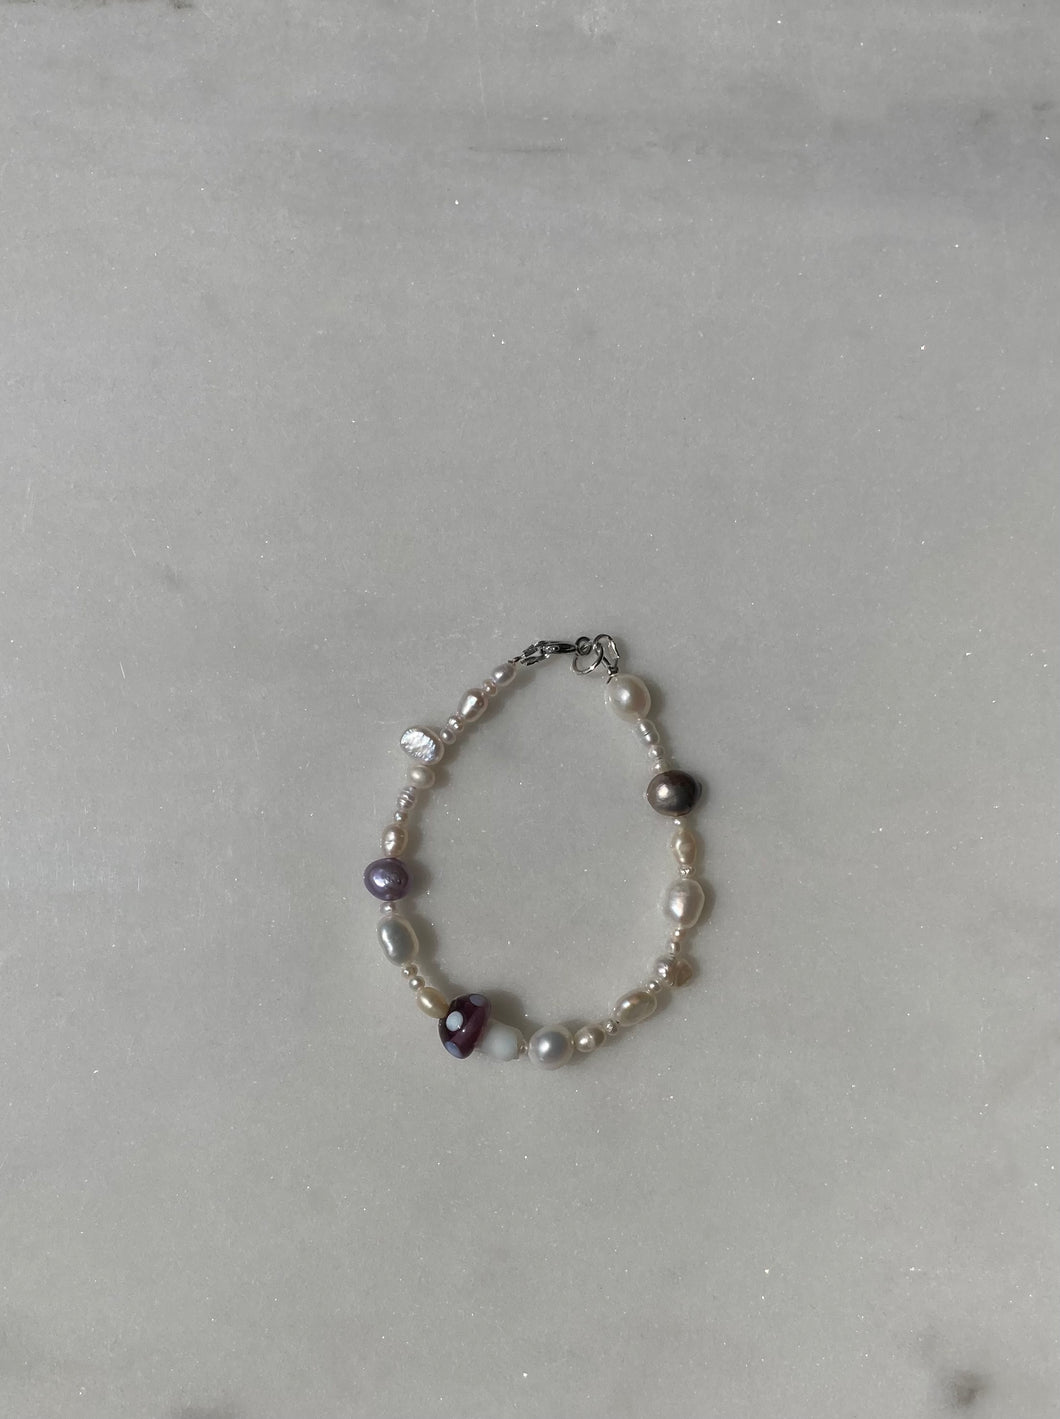 Purple rain bracelet(unique)